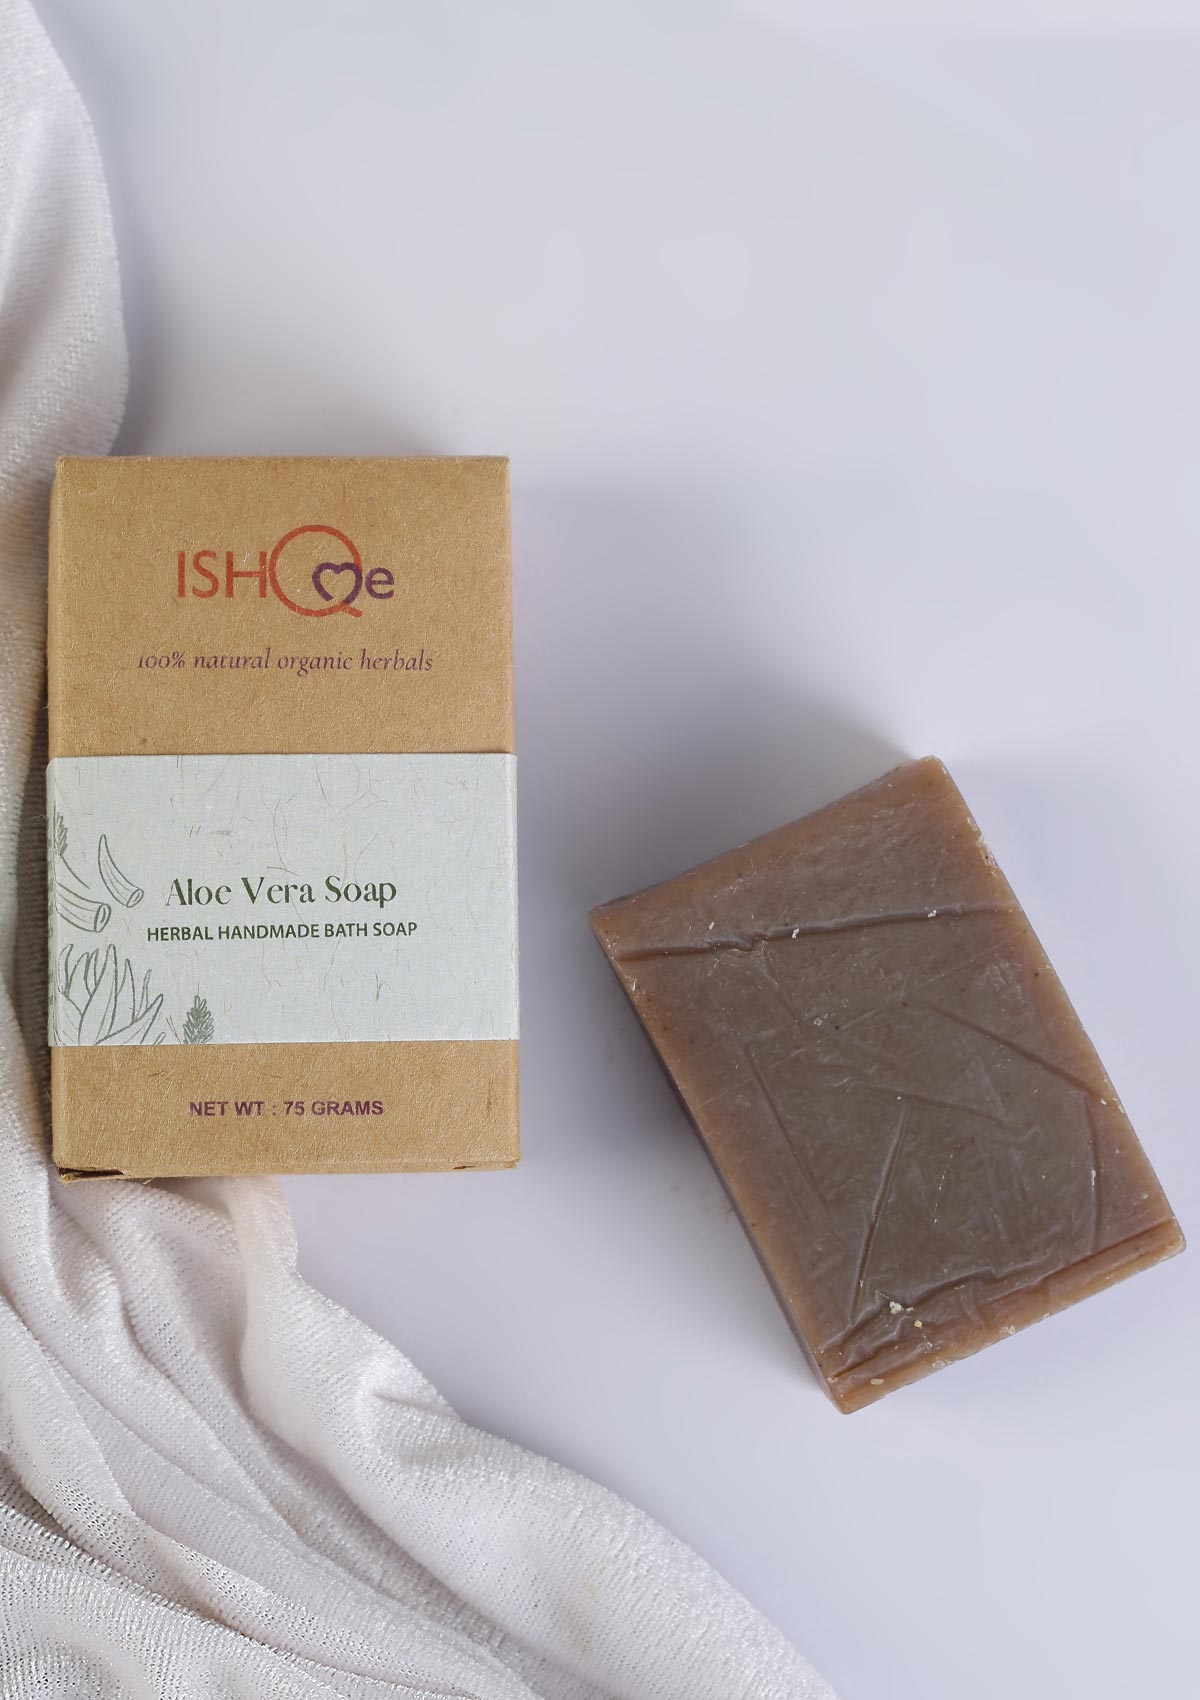 Aloe vera, Tea tree and Turmeric Soap Combo - IshqMe